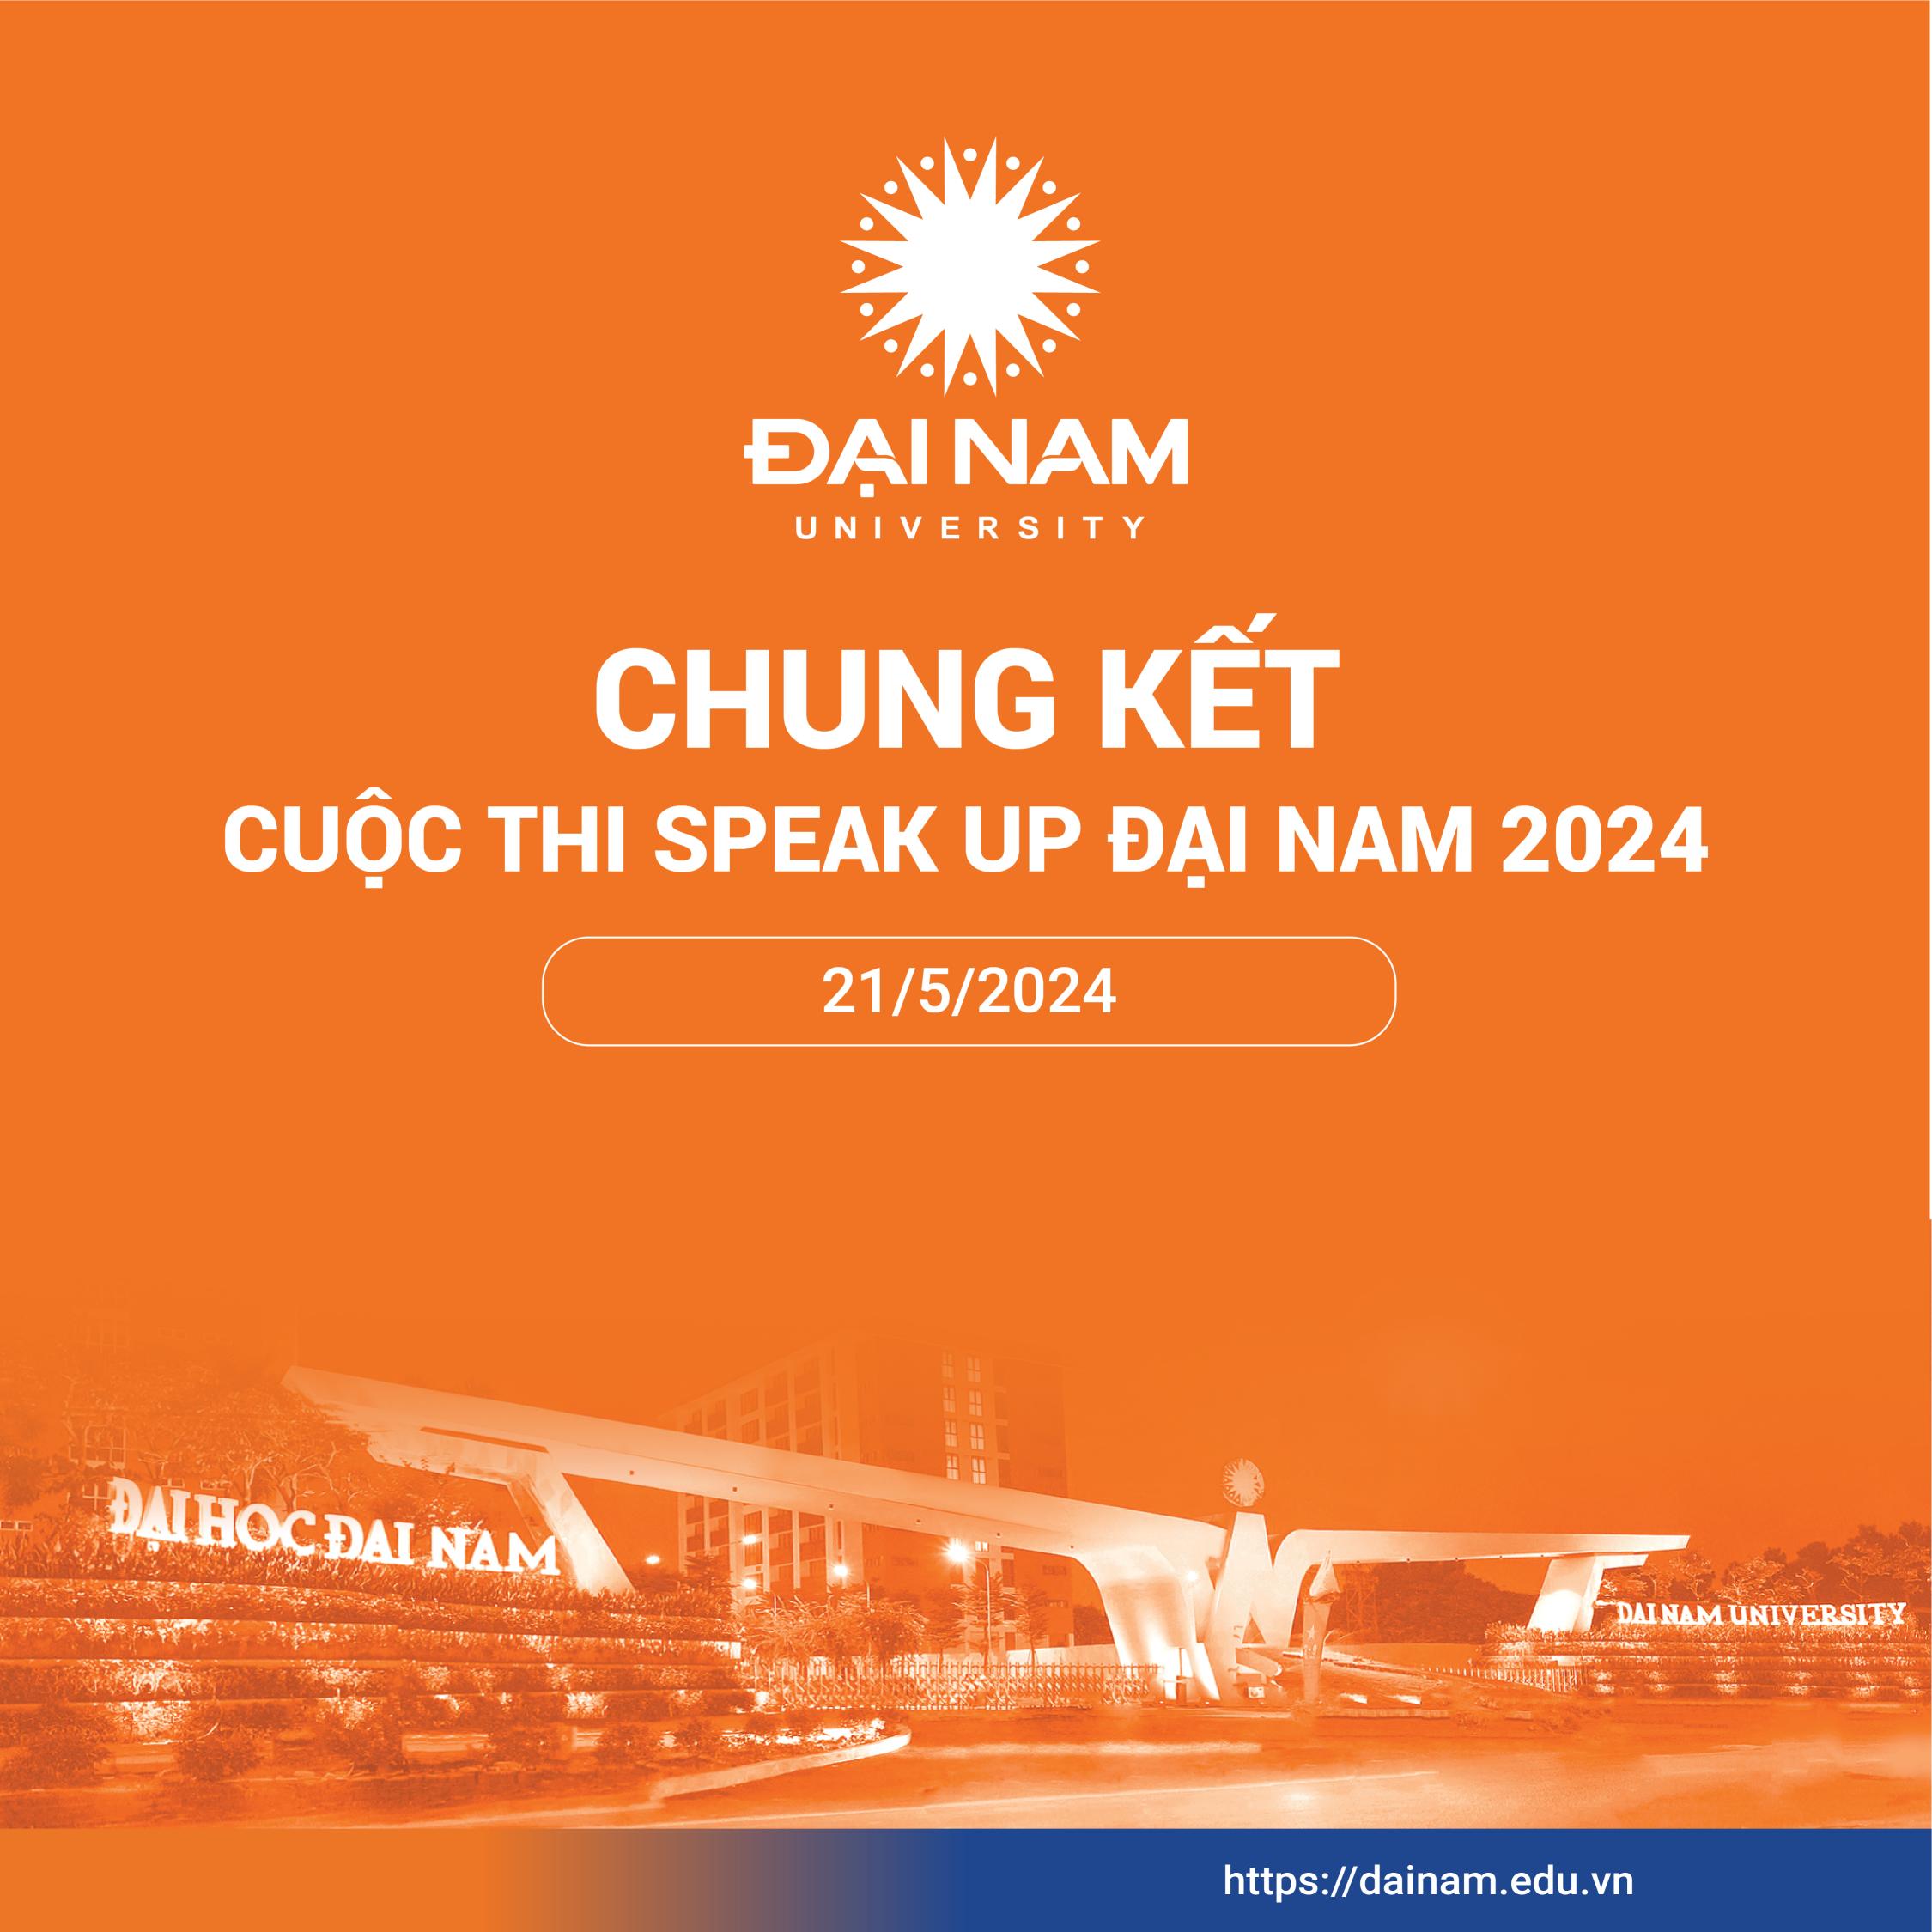 Chung kết cuộc thi Speak Up Đại Nam 2024 